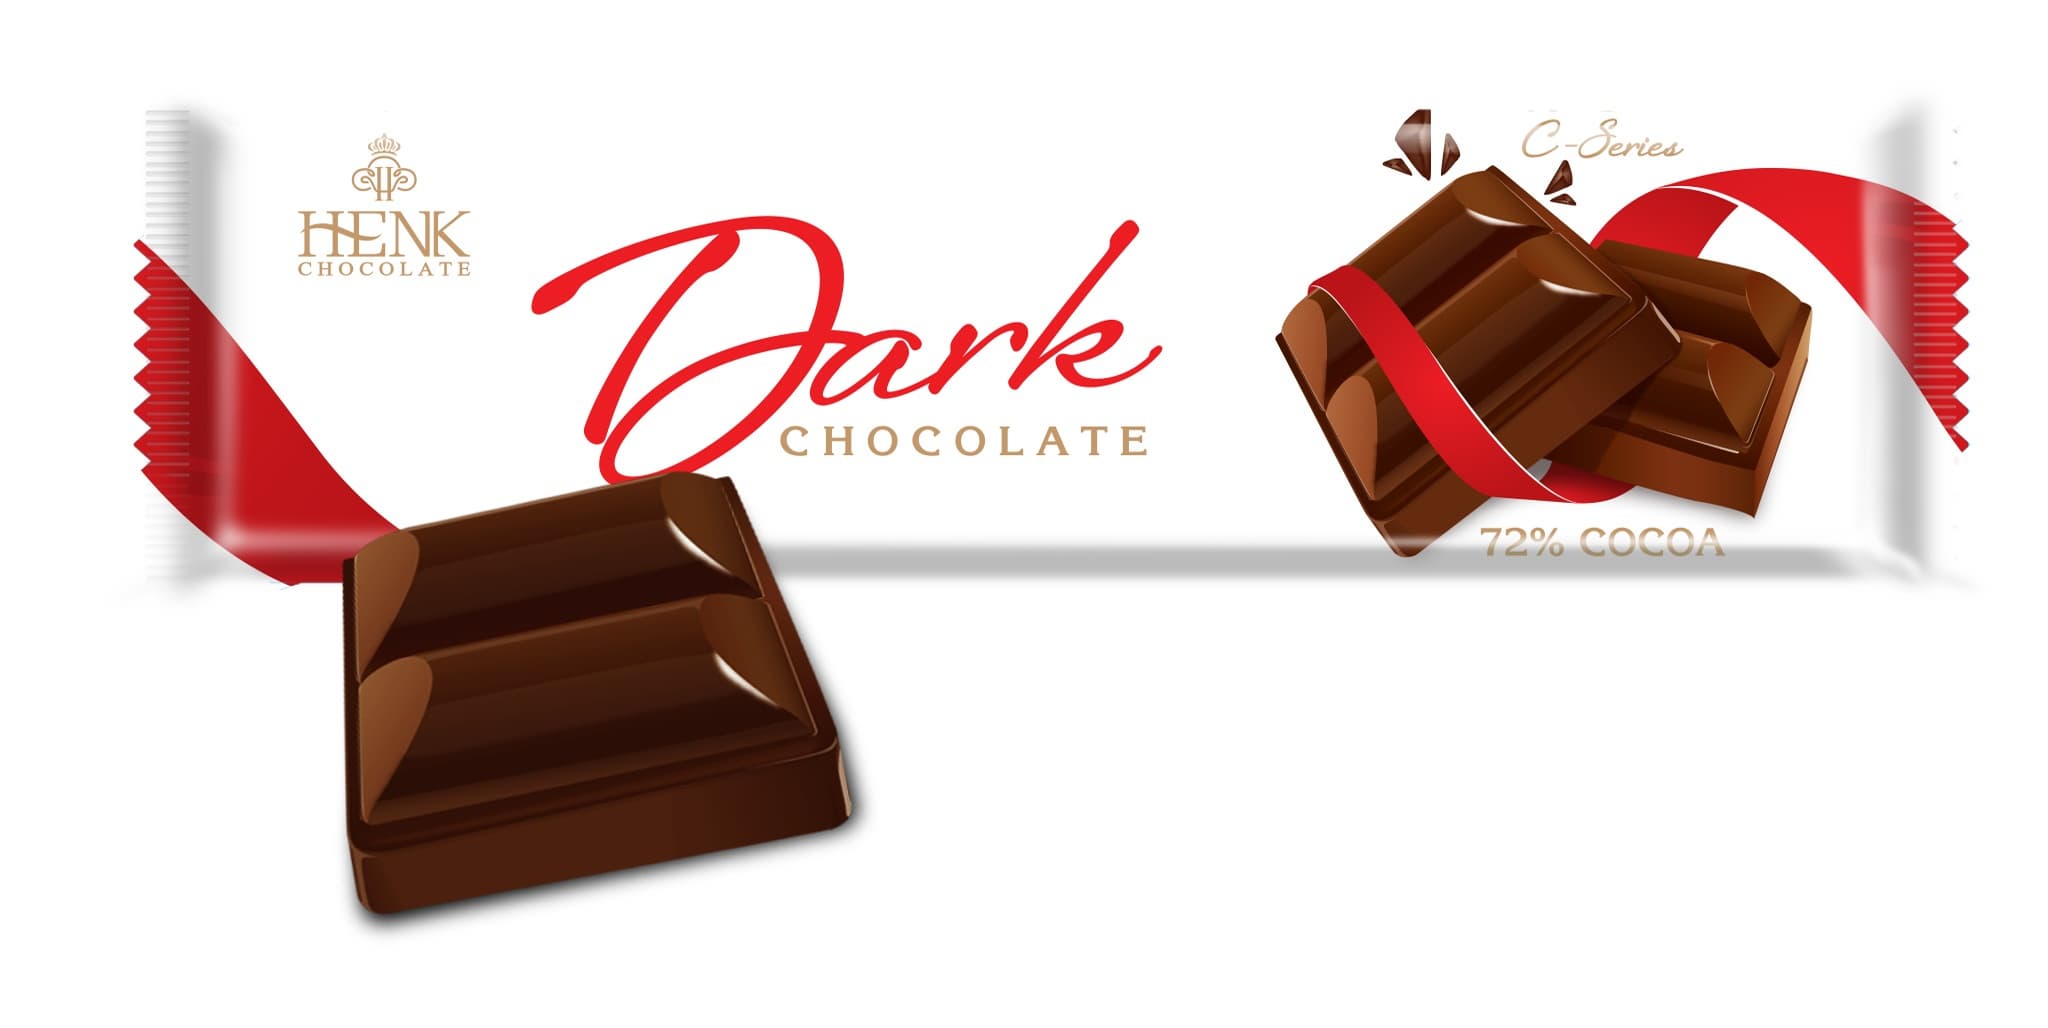 HENK C_SERIES DARK CHOCOLATE 72_